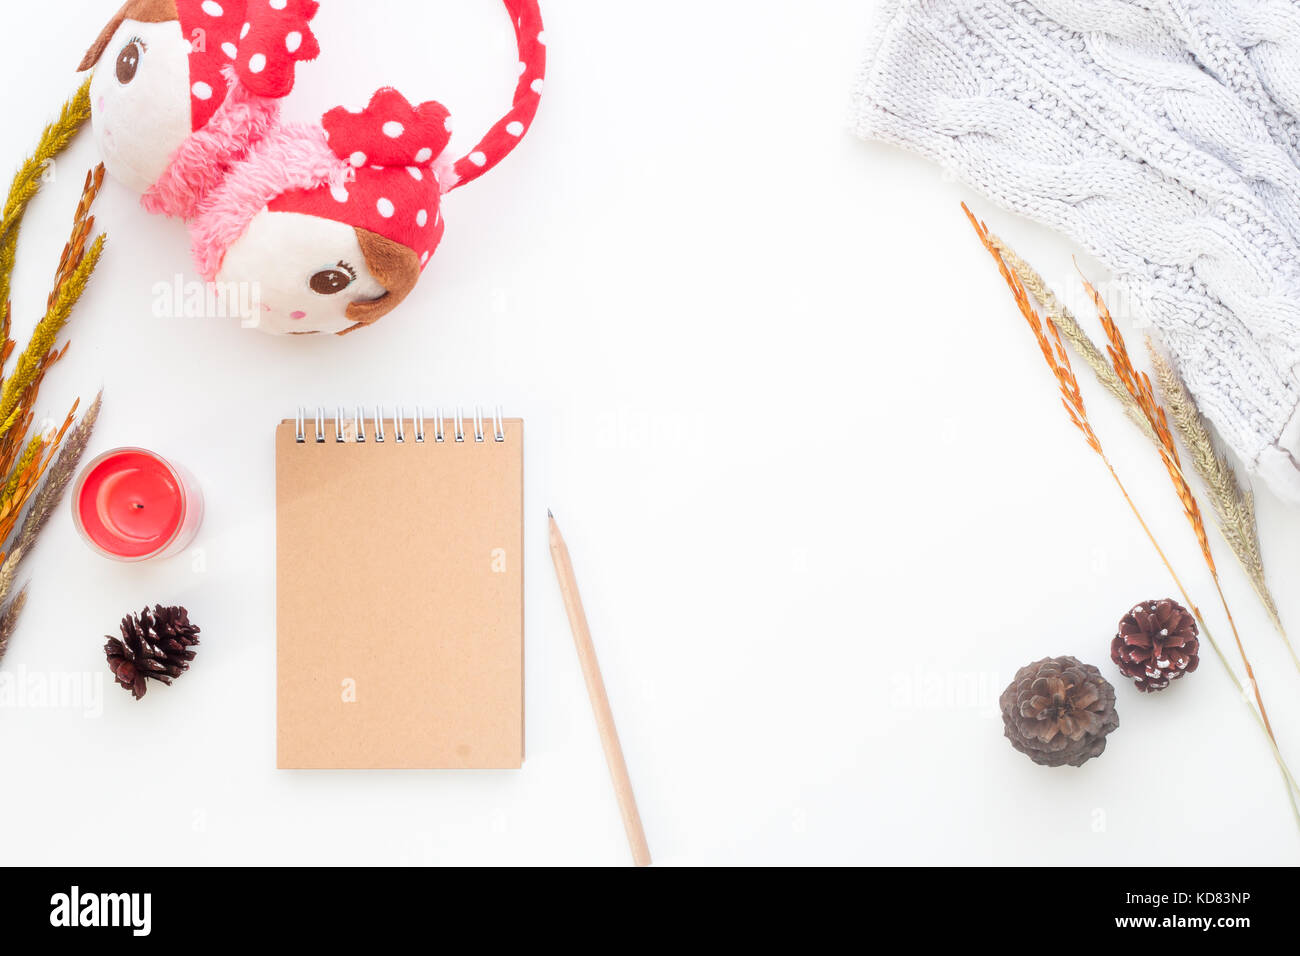 Creative laici piana del concetto di inverno con i notebook, matita, fiori secchi e ragazza accessori su sfondo bianco Foto Stock